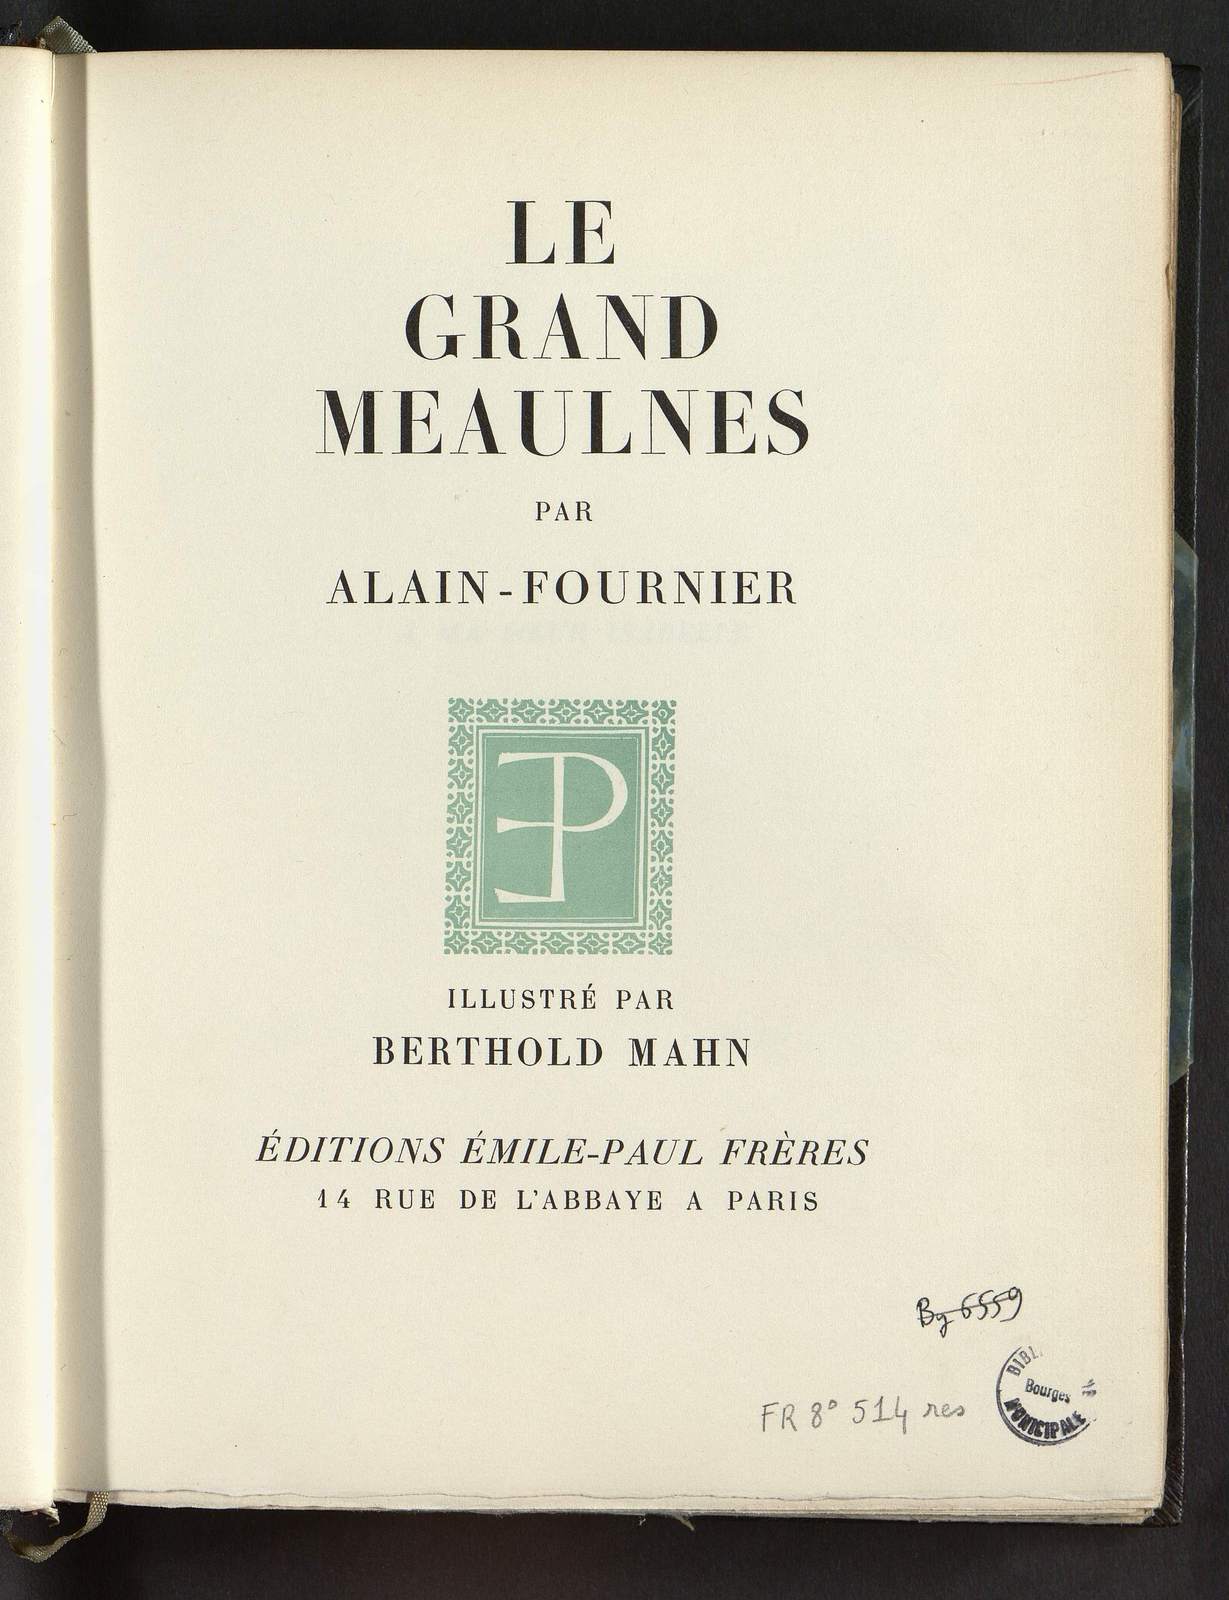 Le Grand Meaulnes, illustré par Berthold Mahn, Emile-Paul Frères, 1938